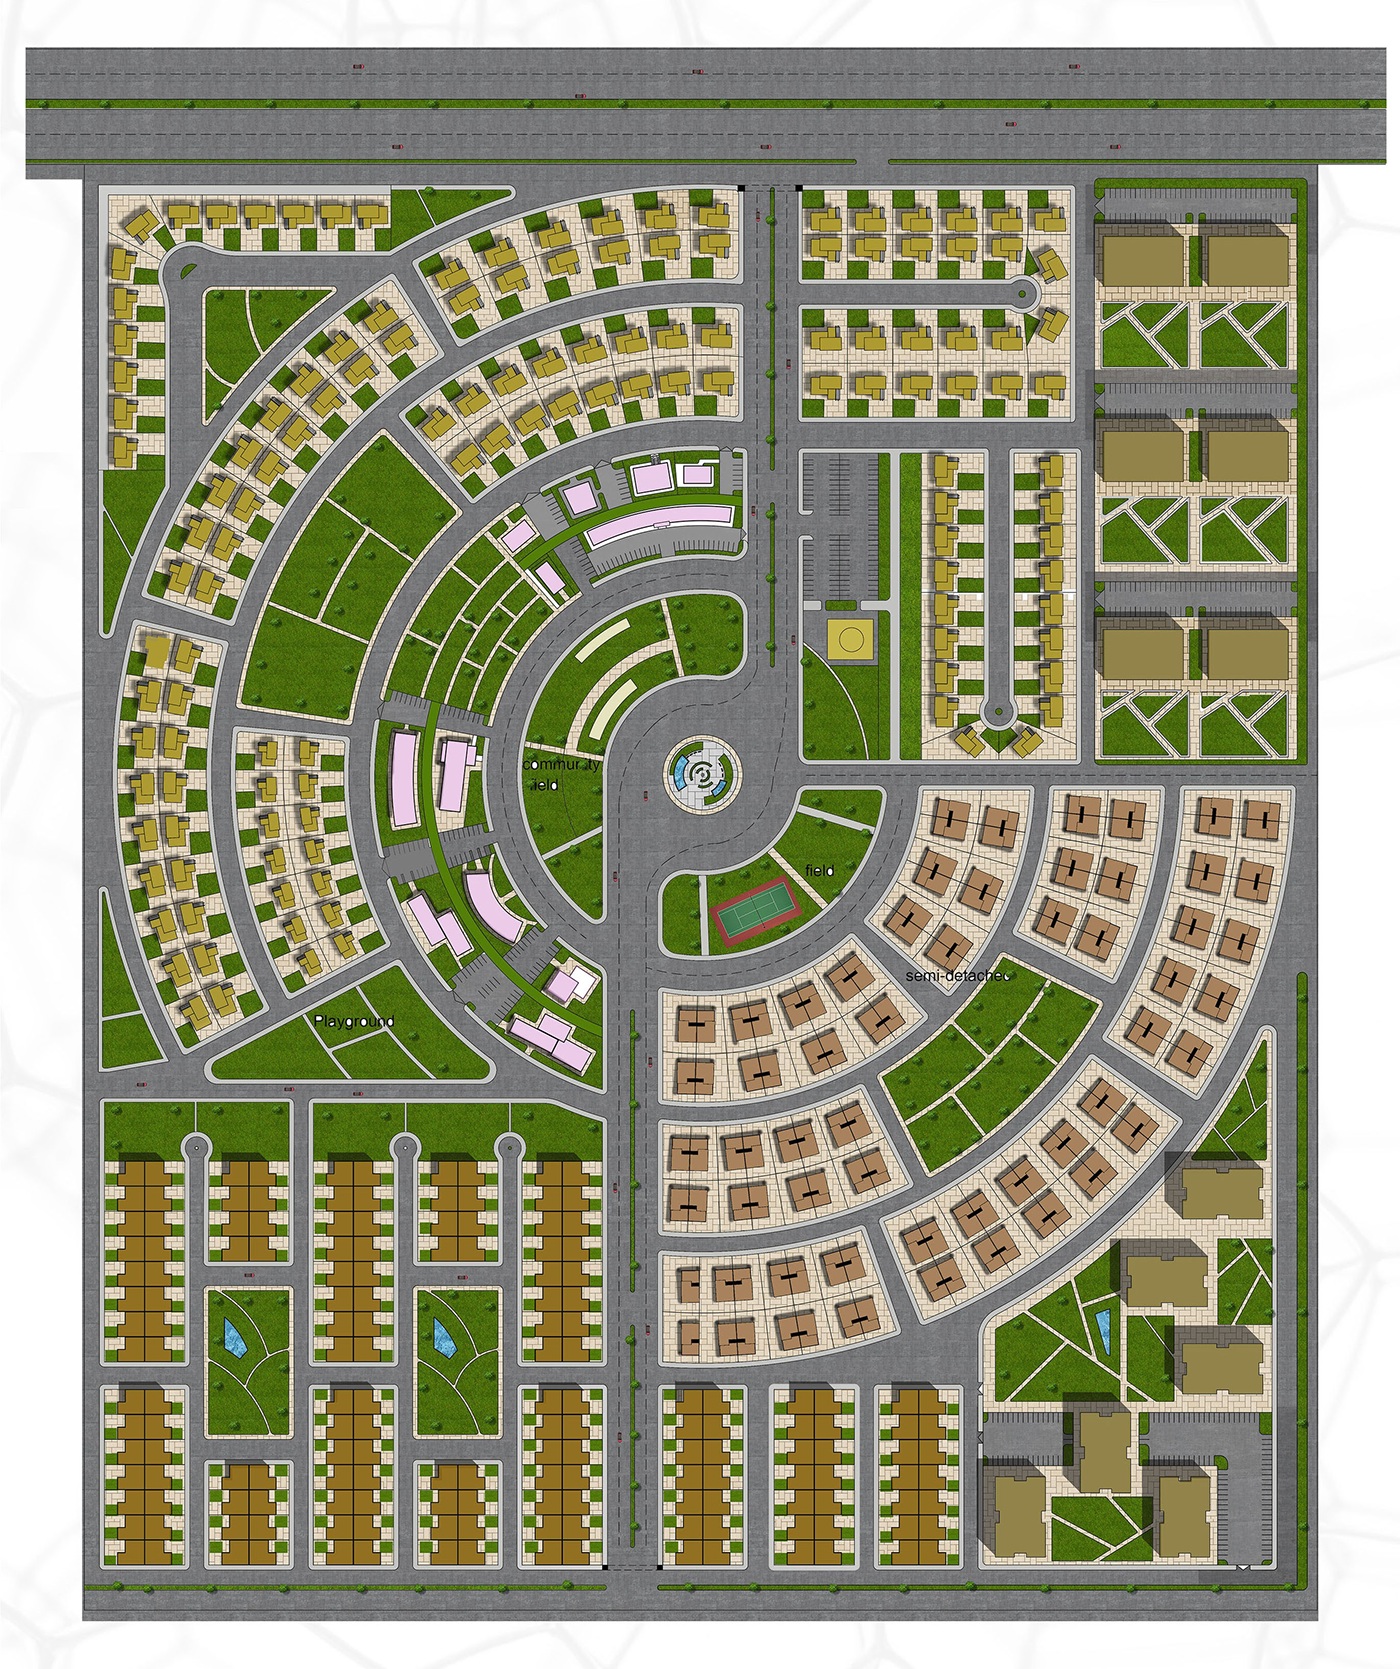 city planning architecture neighborhood design site plan residential areas redesigning andazyaran group Master Plan urban planning housing